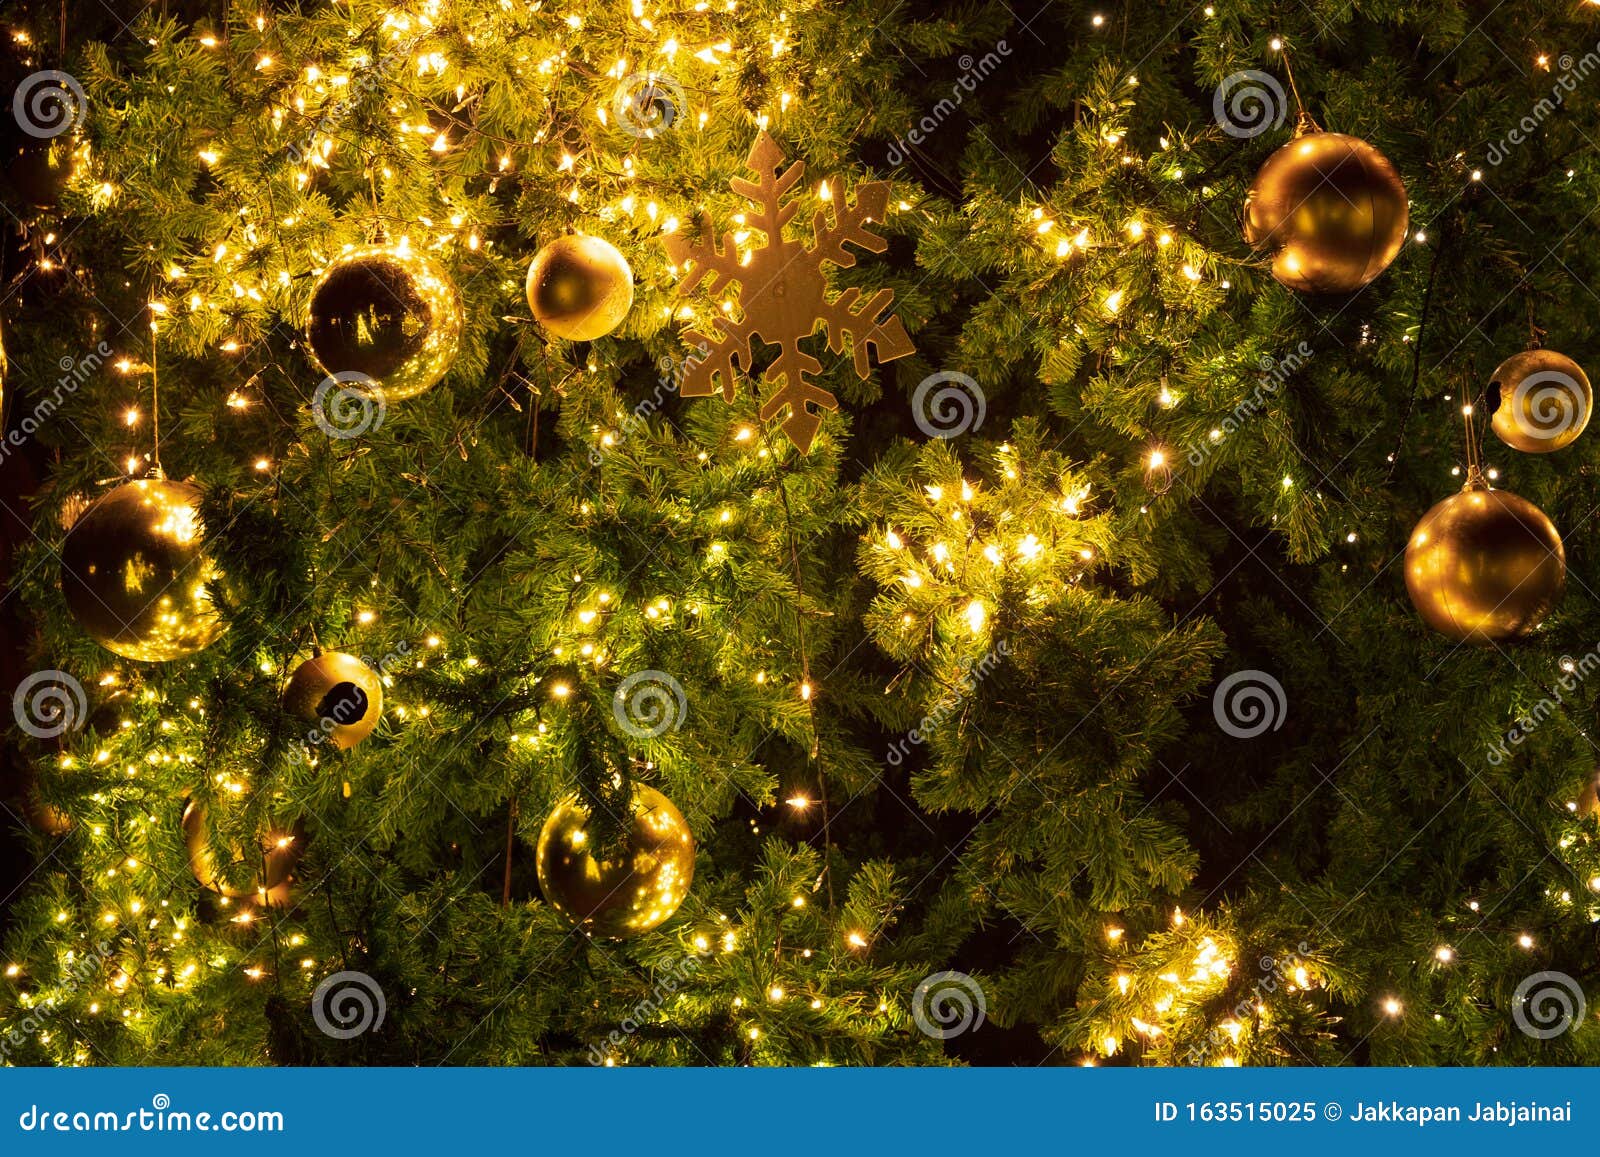 houder Blind Secretaris Kerstboom Met Versiering, Licht En Gouden Bal 's Nachts Stock Afbeelding -  Image of nacht, glanzend: 163515025